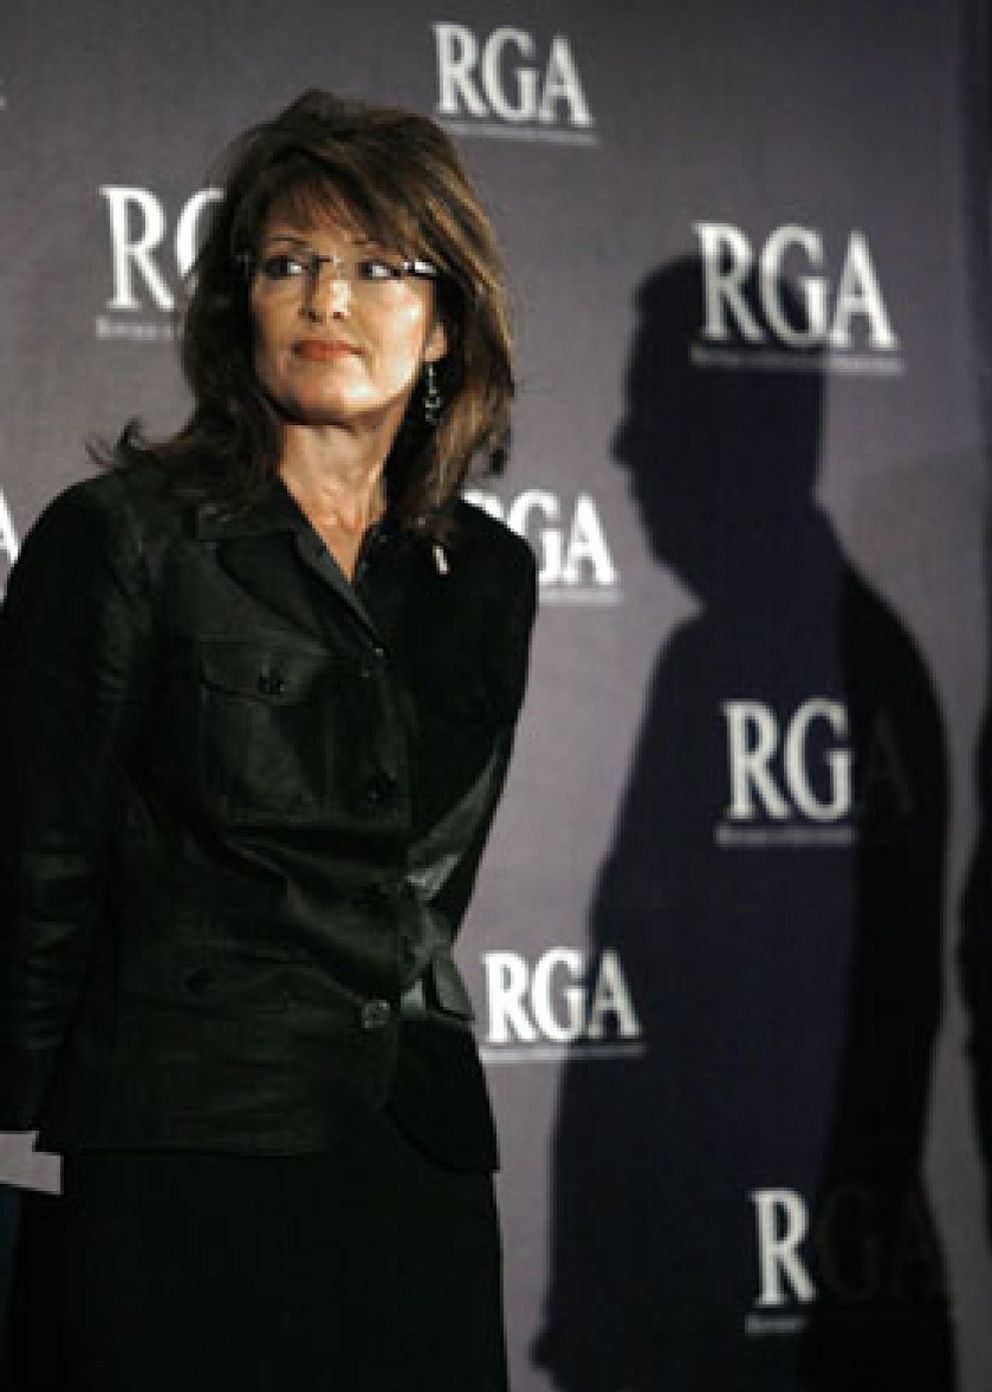 Foto: Palin afirma que una mujer debería ser la candidata presidencial republicana en 2012